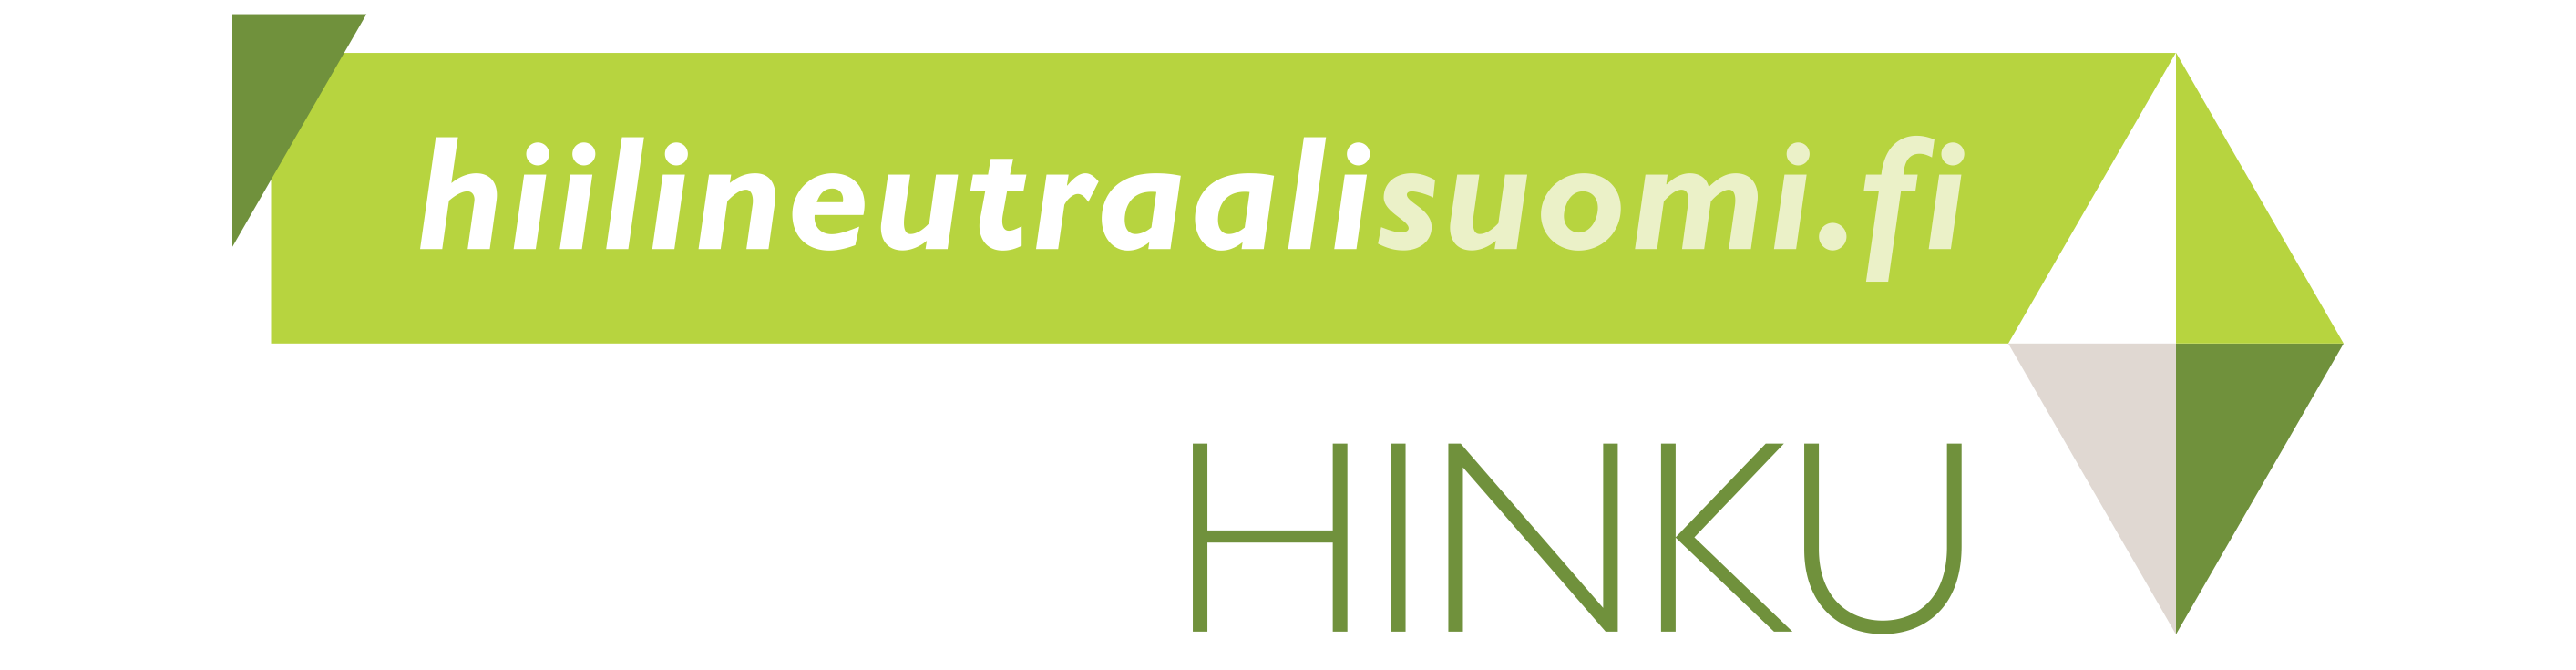 Kuvalinkissä on Hinku-hankkeen logo, joka johtaa Suomen ympäristökeskuksen ylläpitämälle Hiilineutraalisuomi.fi-sivustolle. 